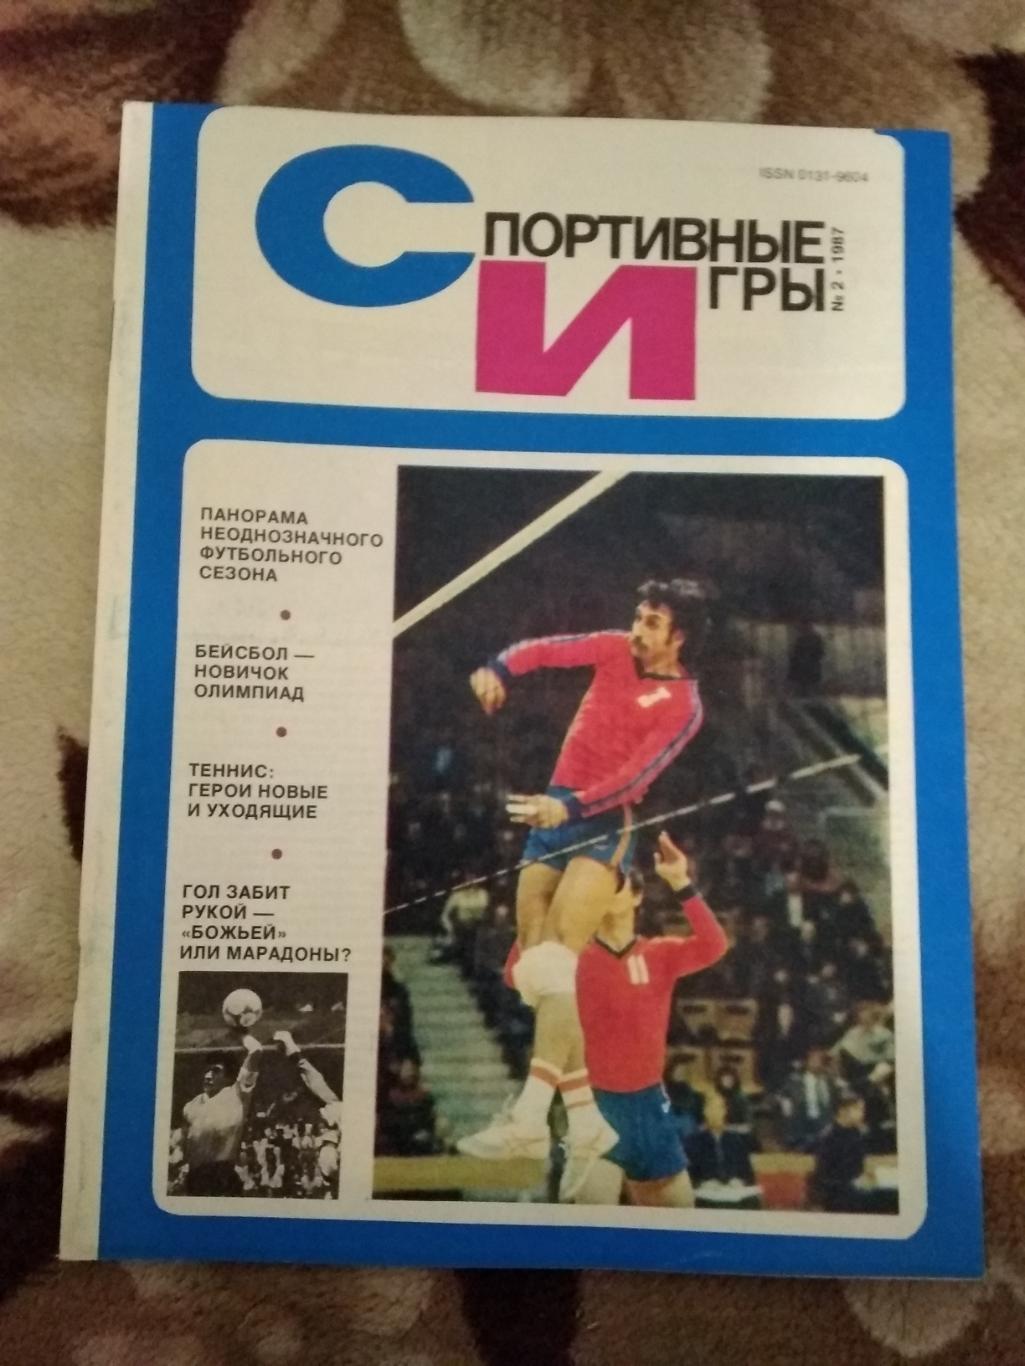 Журнал.Спортивные игры № 2 1987 г.